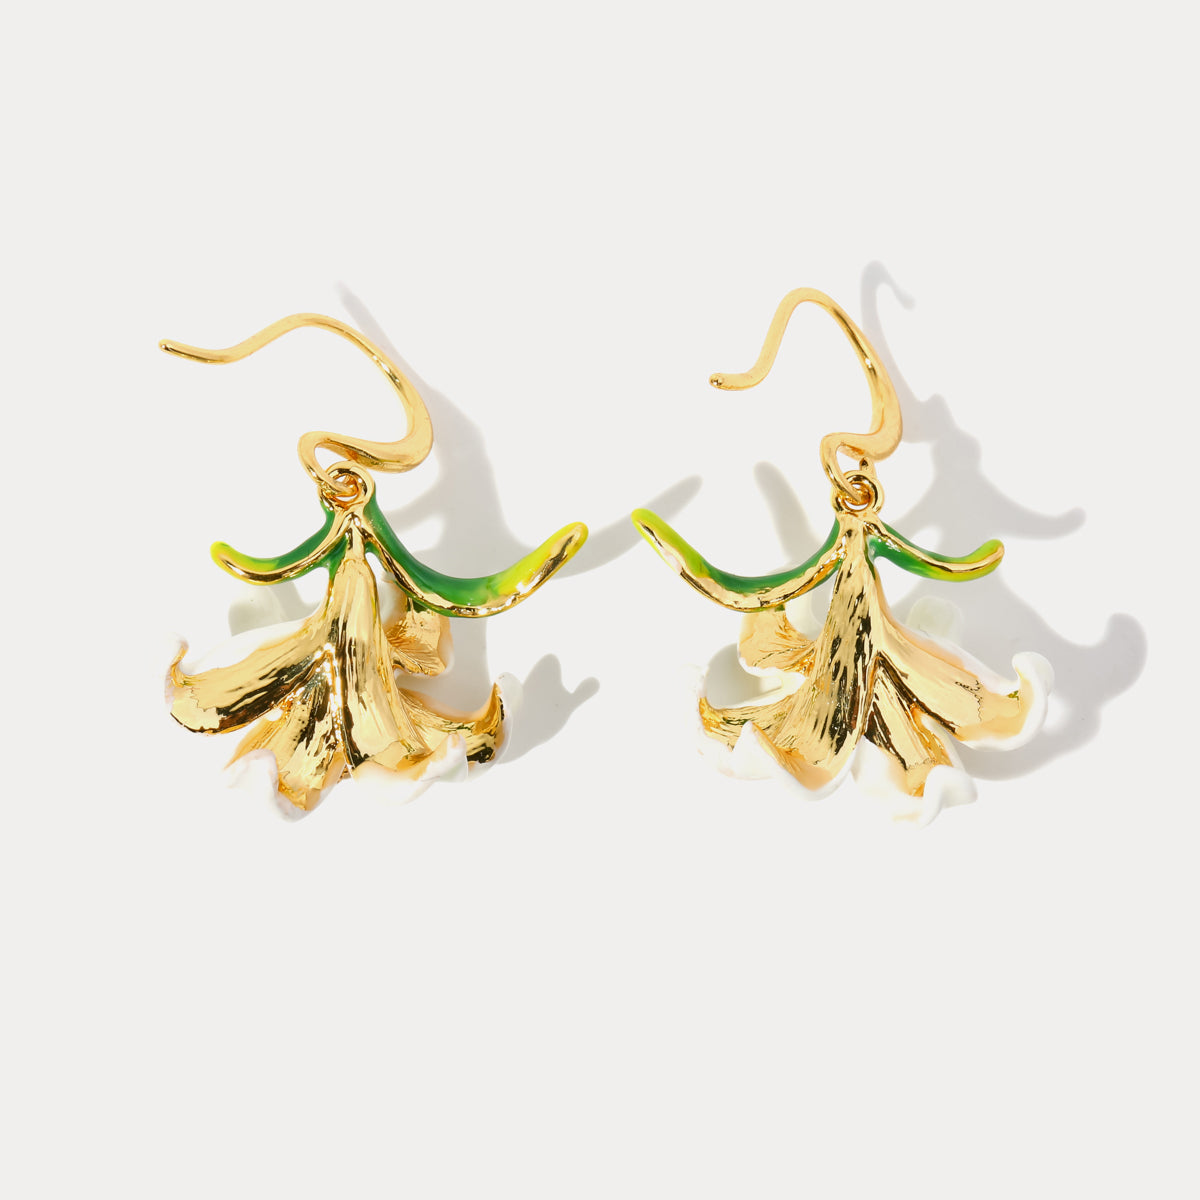 lily enamel earrings for influencer